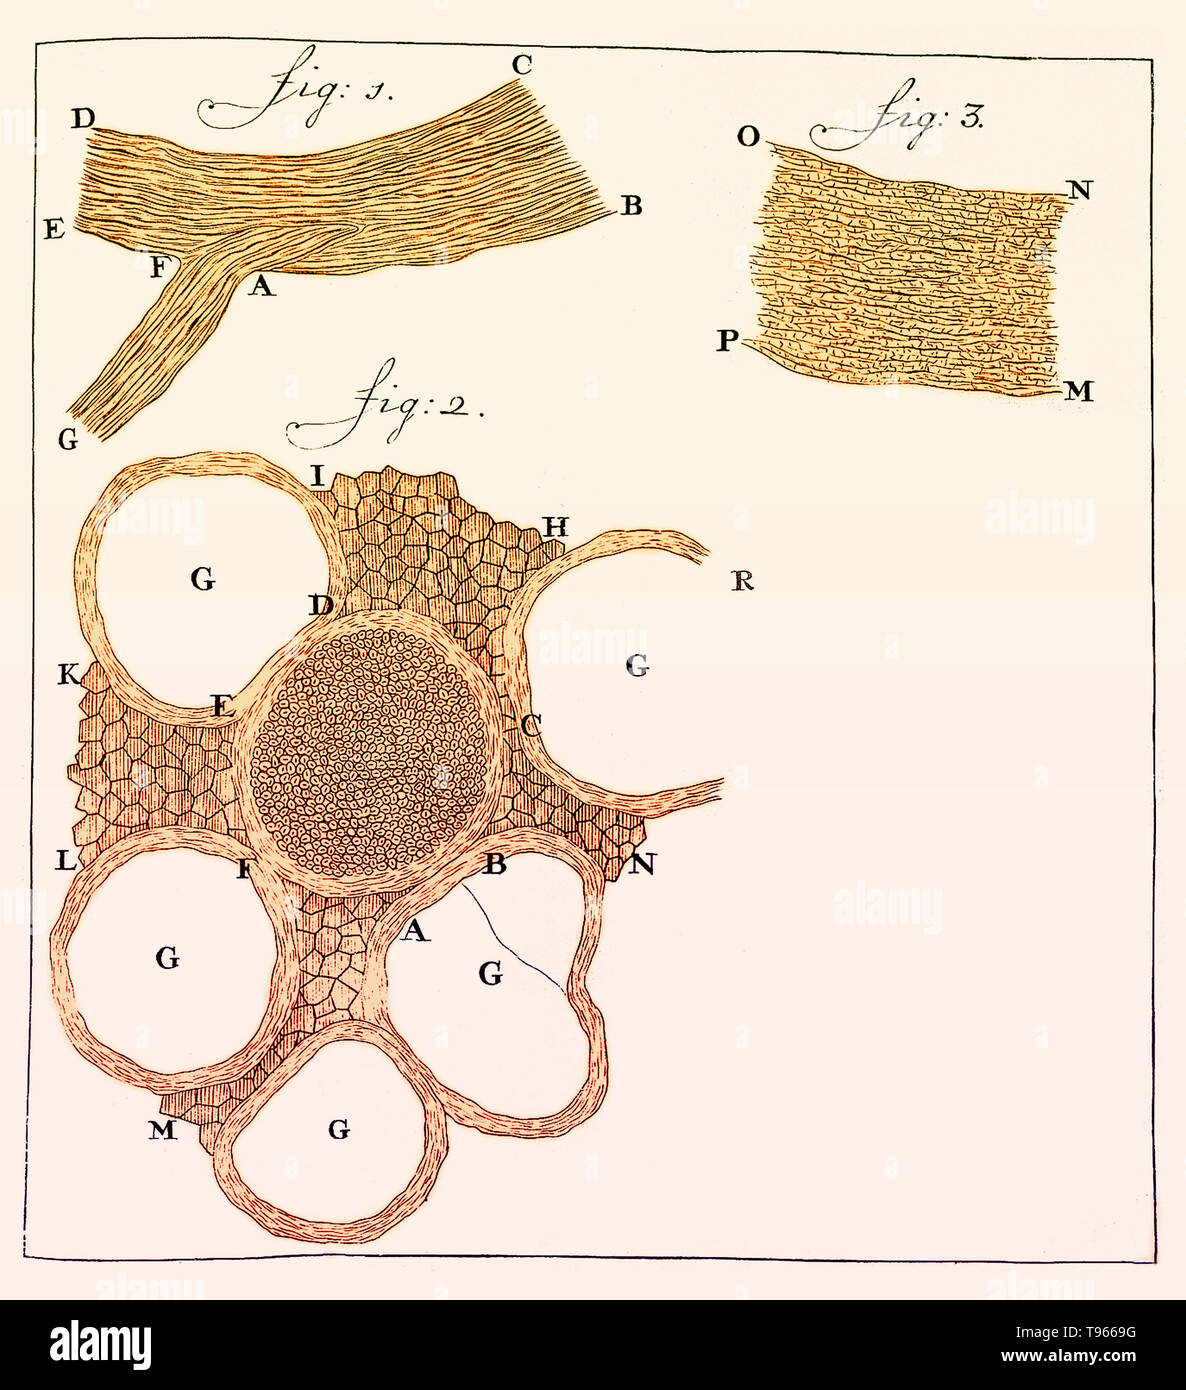 Sezioni di nervi disegnata da Anthony van Leeuwenhoek. In figura 1 : una sezione longitudinale del nervo periferico. Fig. 2: la sezione trasversale di un nervo che mostra le singole fibre. Data di pubblicazione: 1719. Leeuwenhoek (1632-1723) era un scienziato olandese, ora considerato il primo microbiologo. Egli è meglio conosciuto per il suo lavoro sul miglioramento del microscopio e per i suoi contributi verso lo stabilimento di microbiologia. Foto Stock